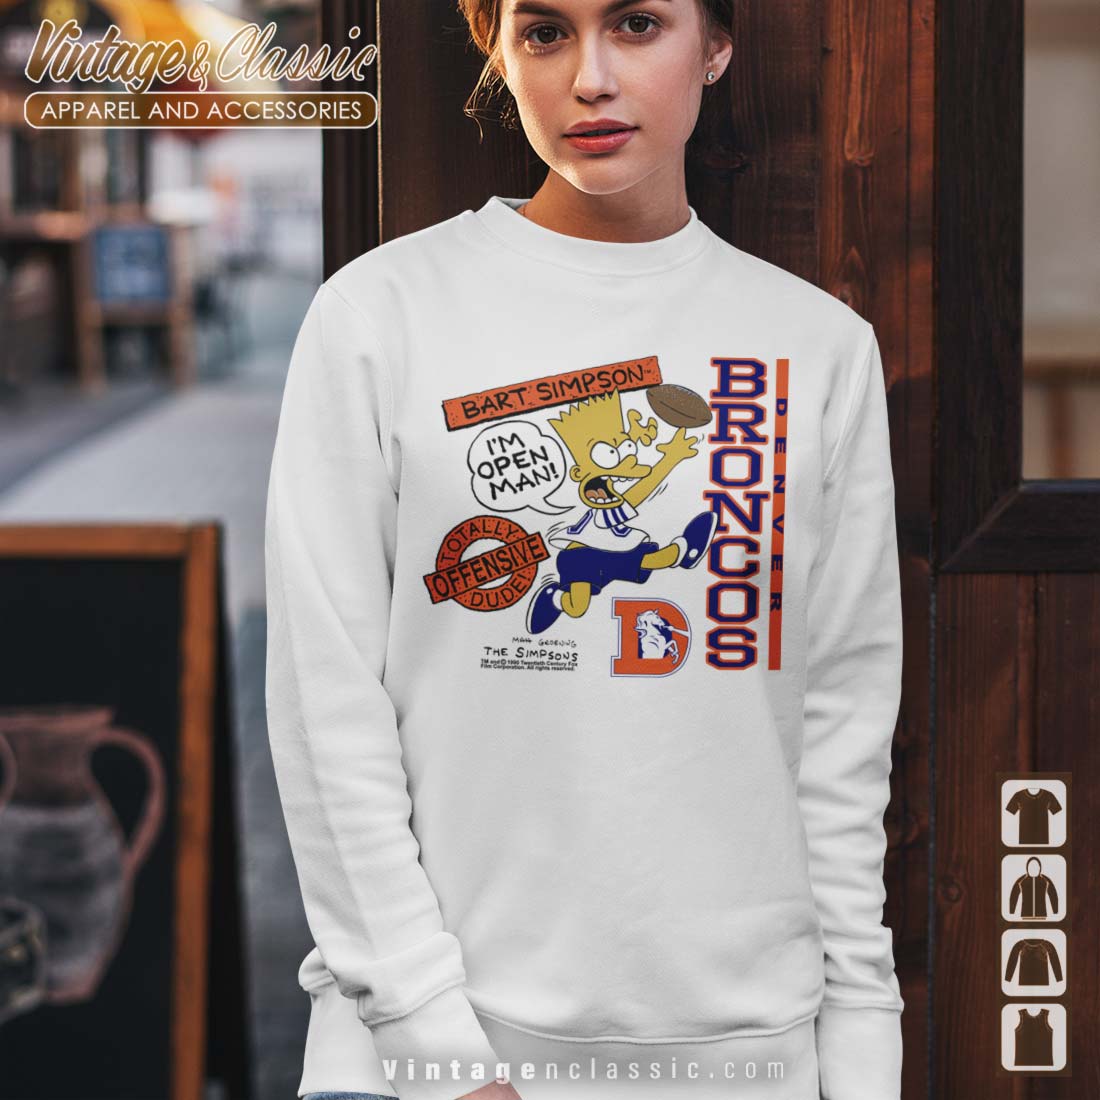 Bart Simpson Denver Broncos NFL Shirt - High-Quality Printed Brand